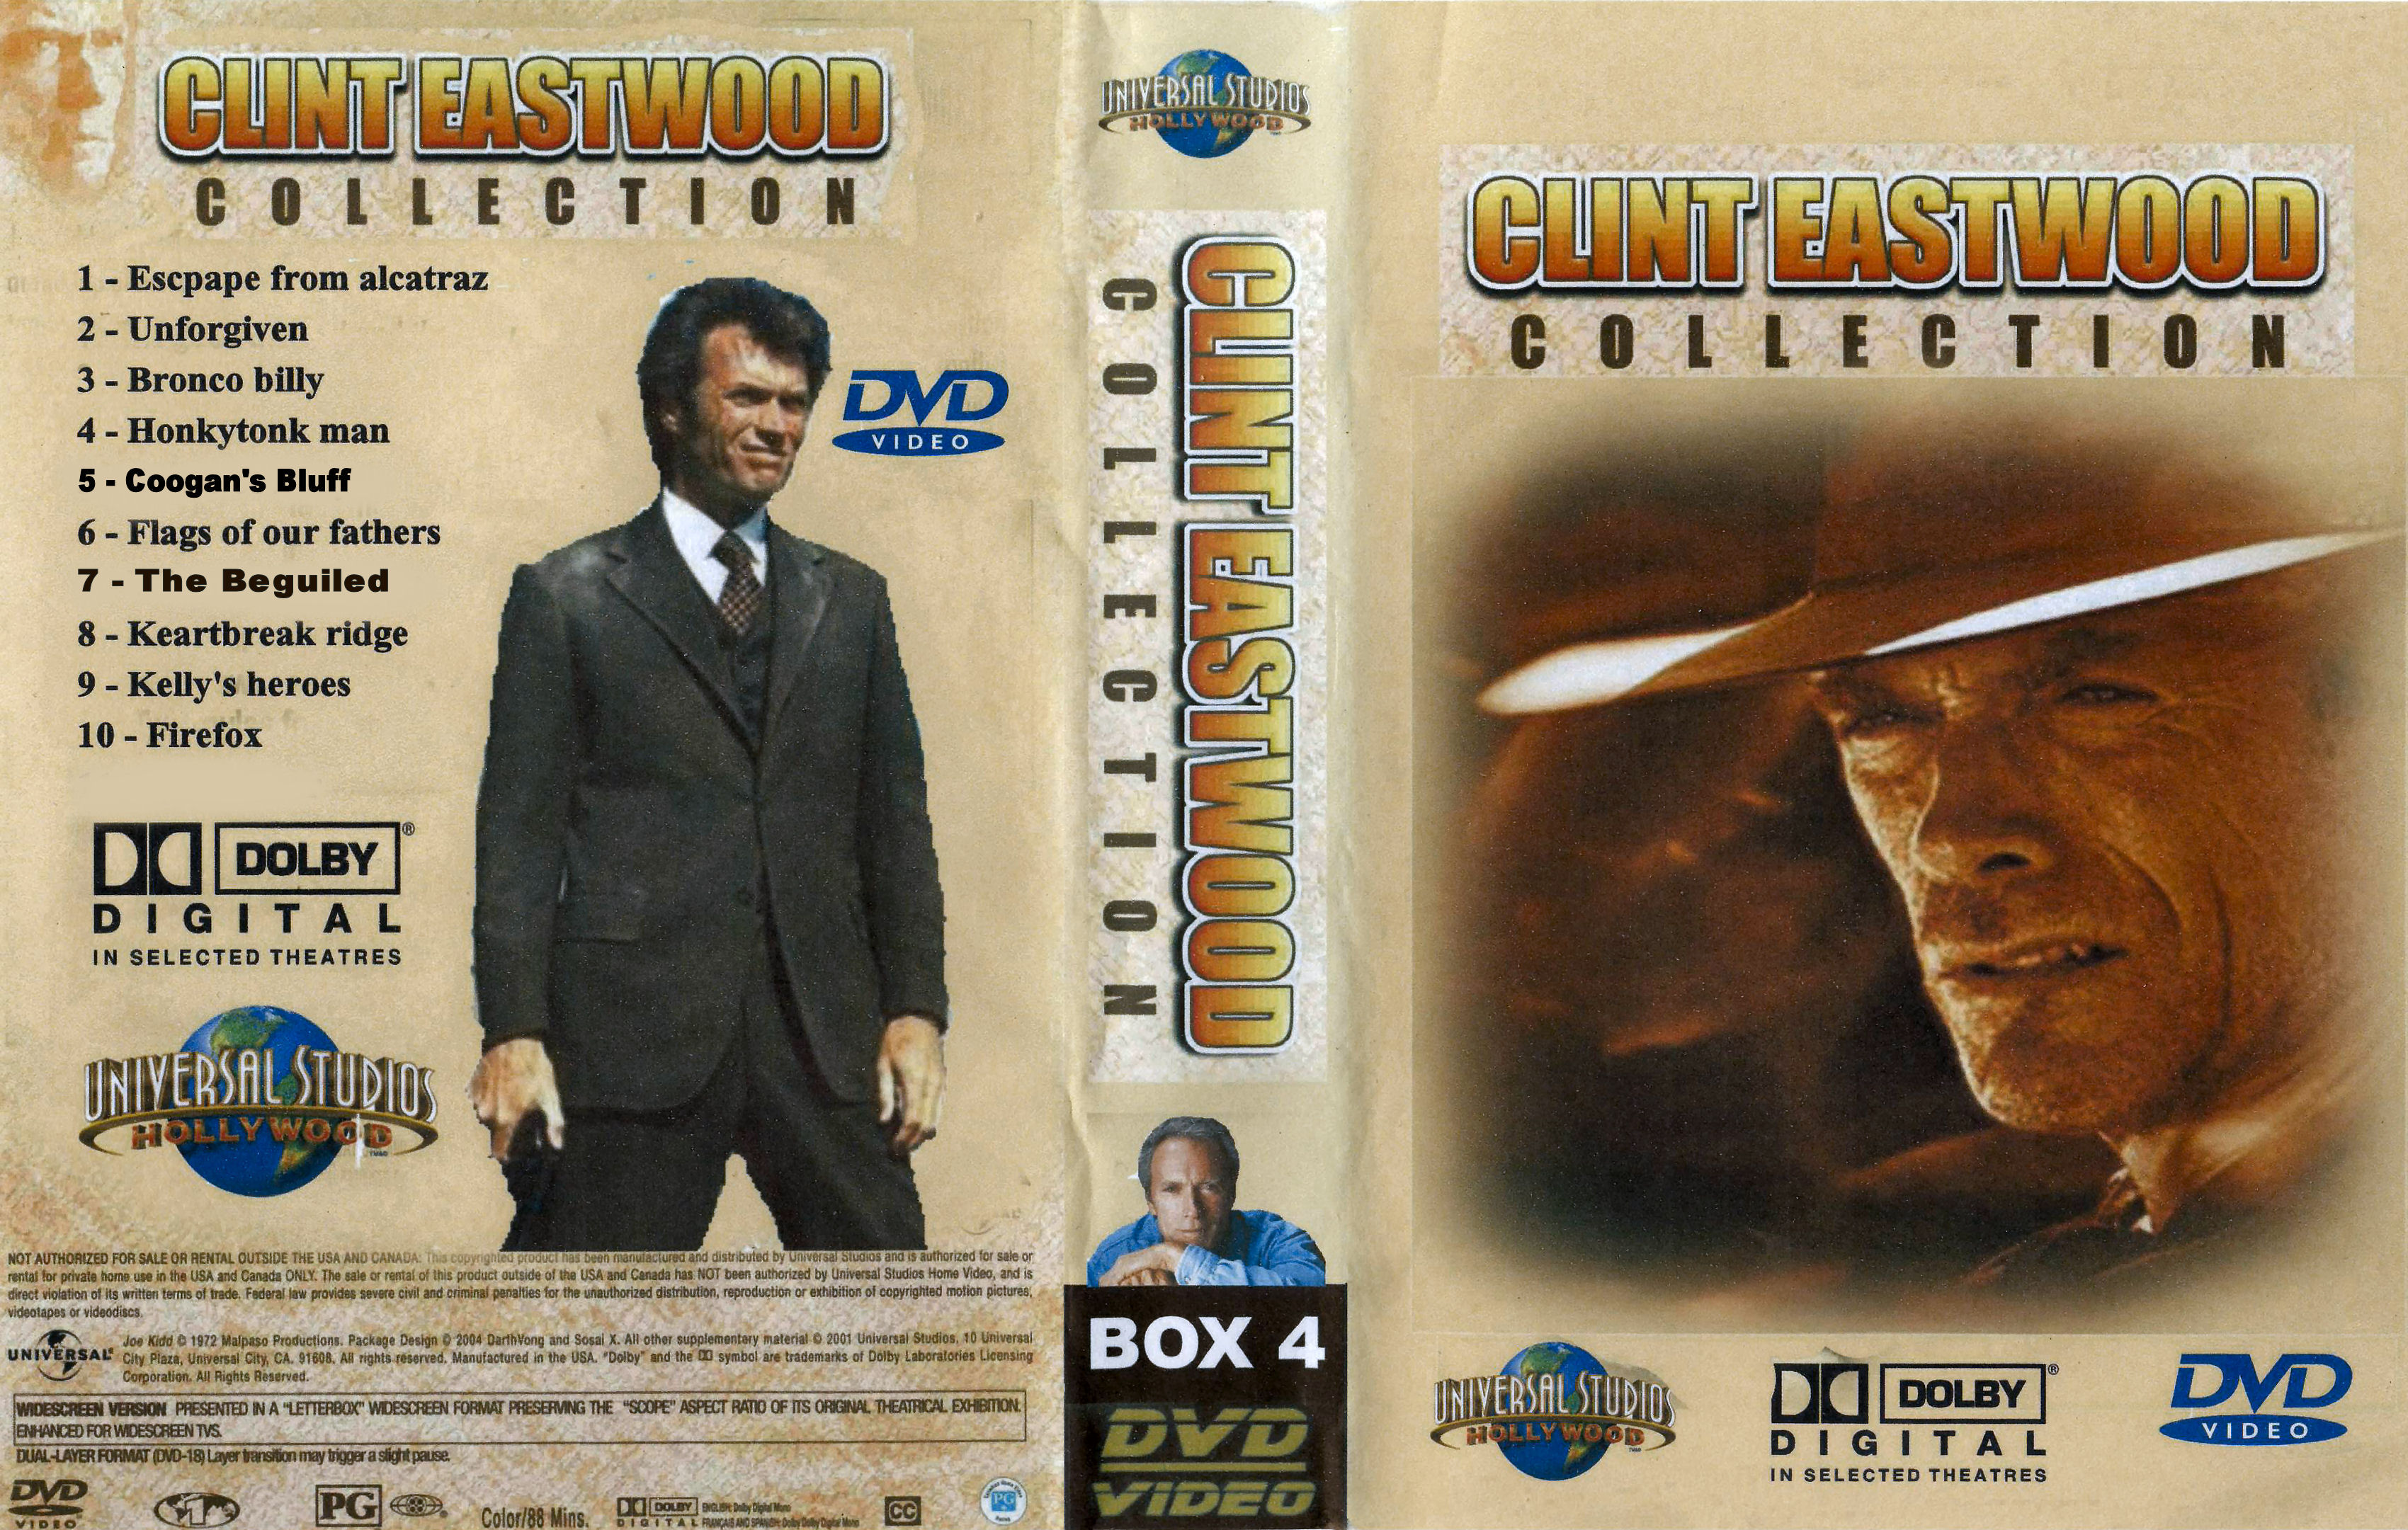 Clint Eastwood Collectie Box 4 DvD 7 van 10